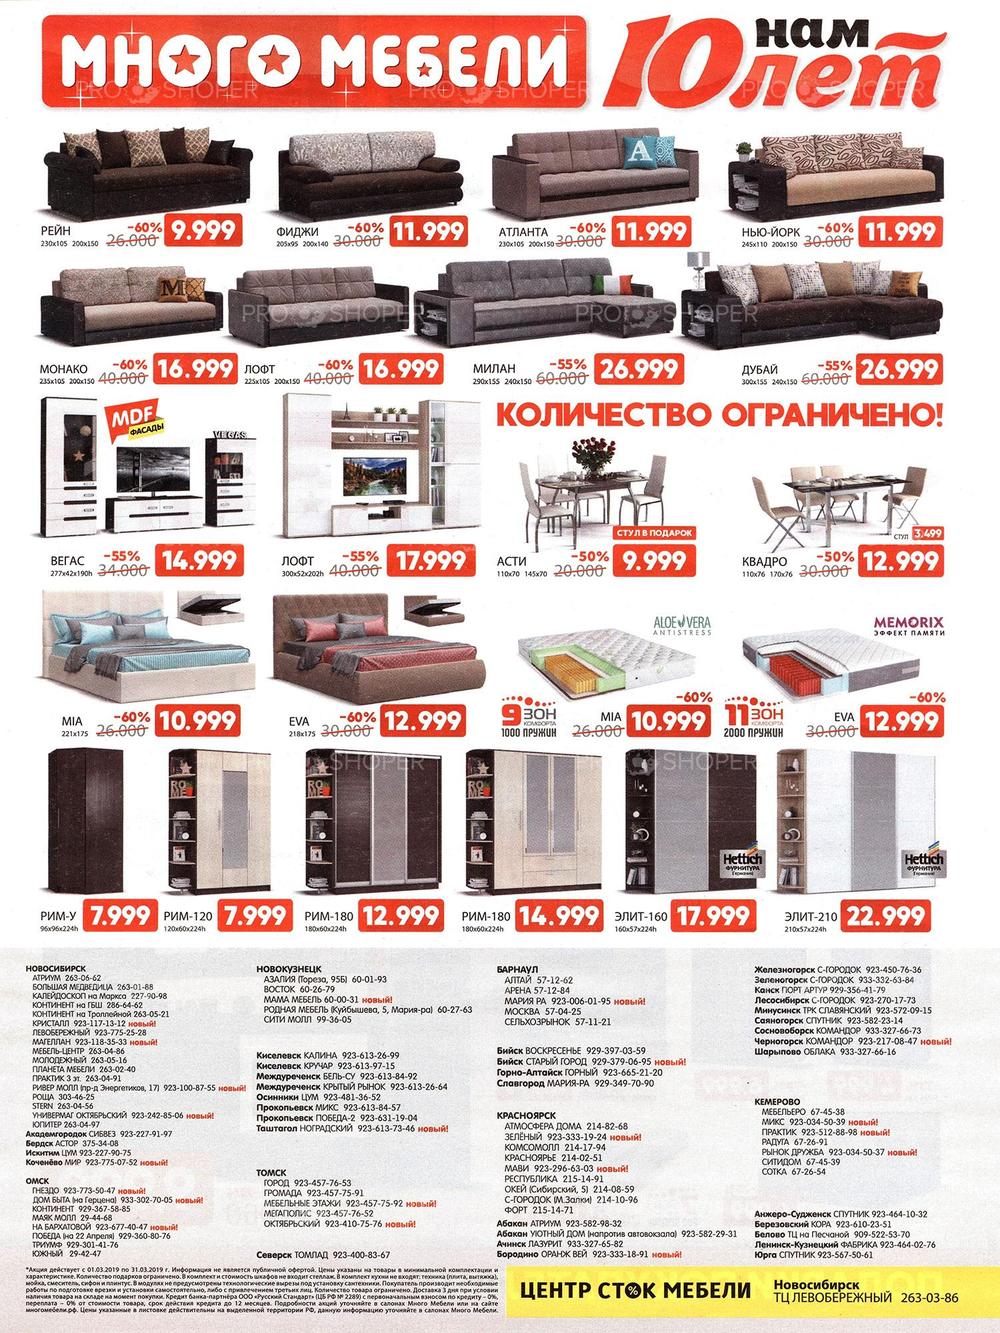 Много мебели Ульяновск каталог